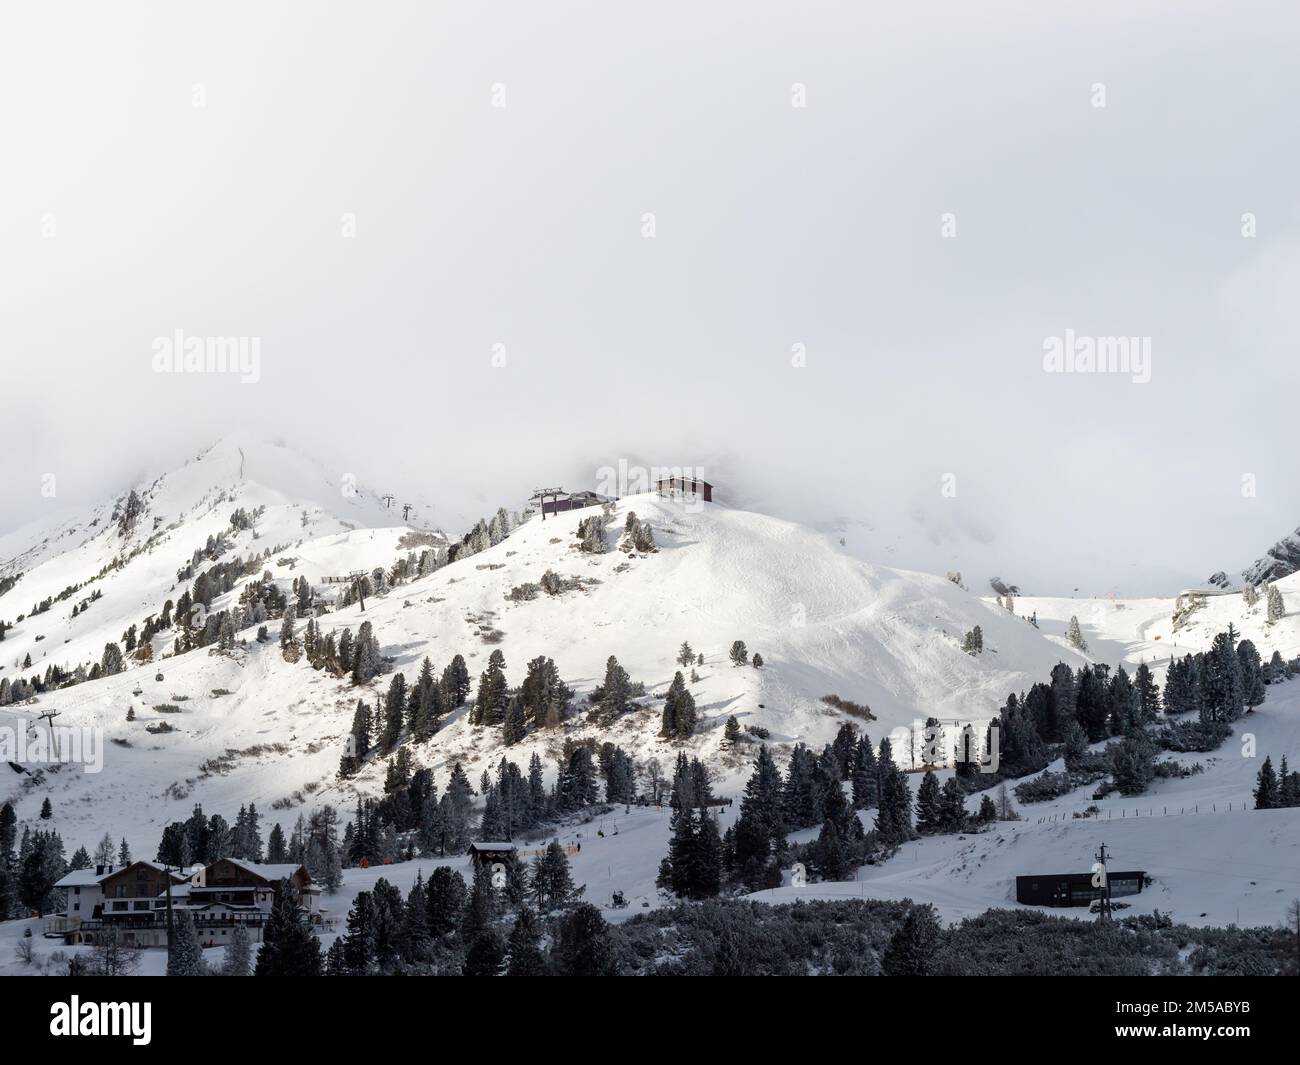 Skiliftanlage auf einem schneebedeckten Berg im Winter. Skigebiet in österreichischer Landschaft mit schöner Natur. Stockfoto